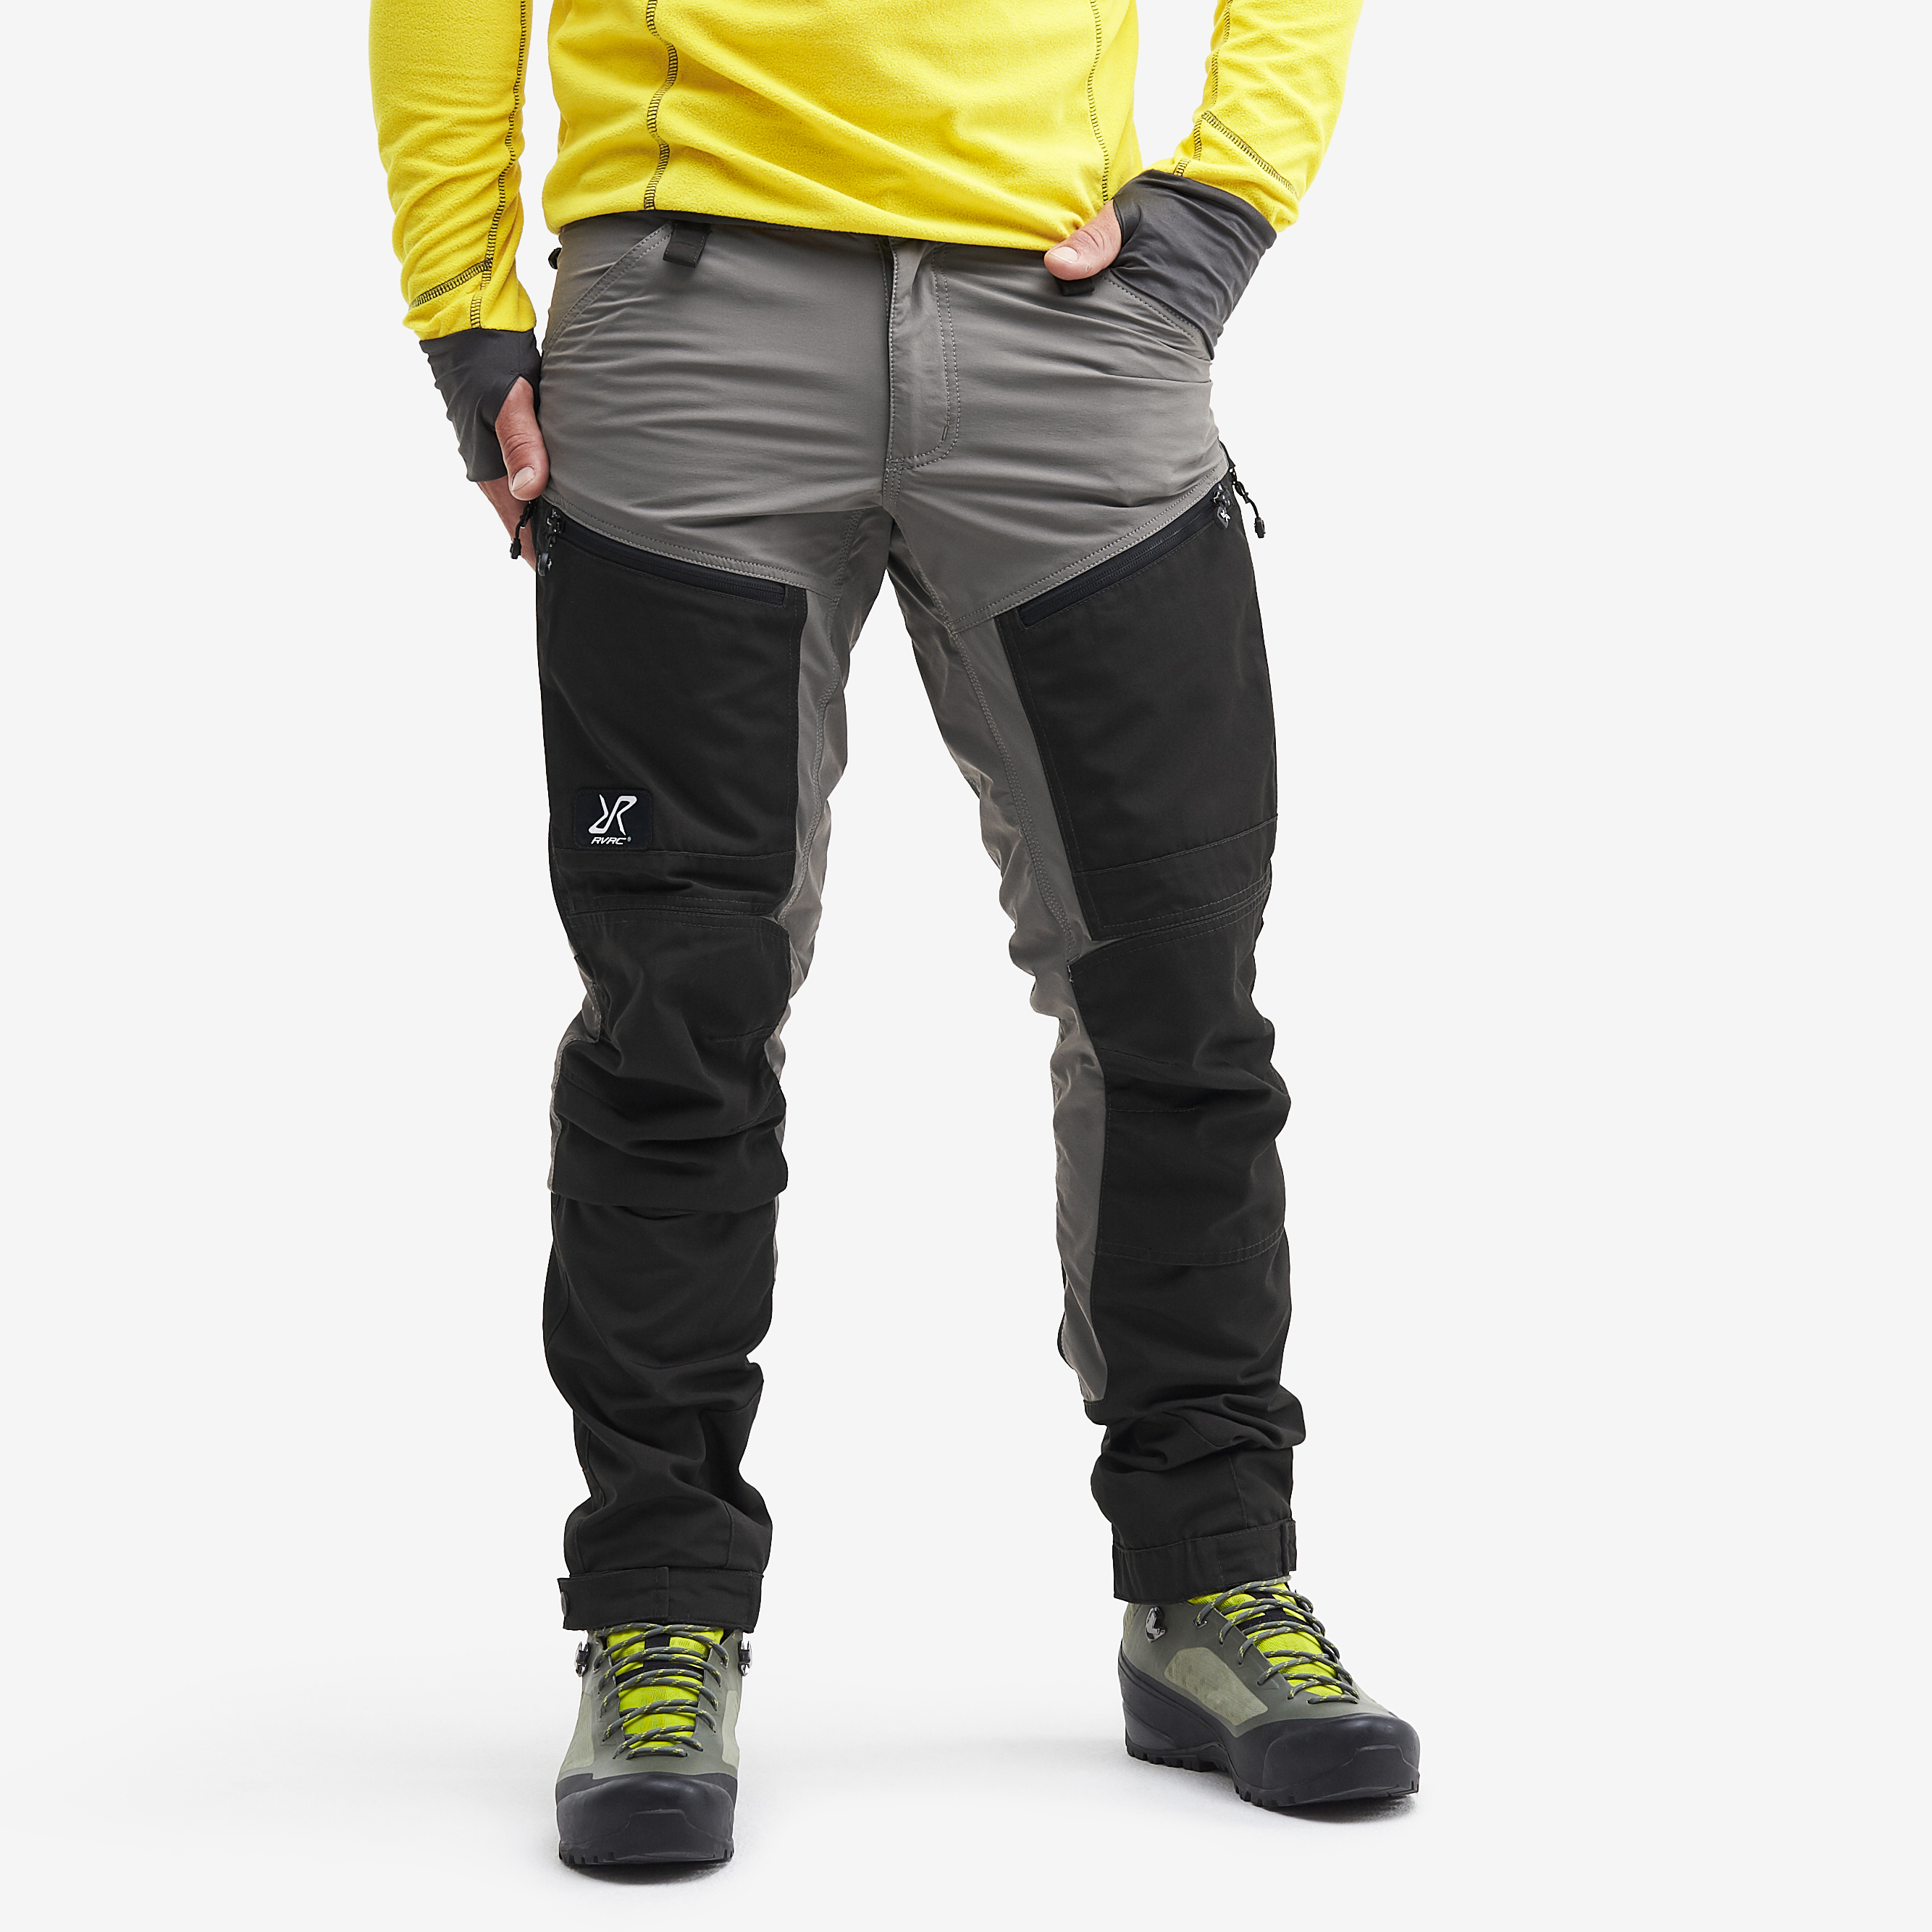 RVRC GP Pro turistické kalhoty pro muže v světle šedé barvě